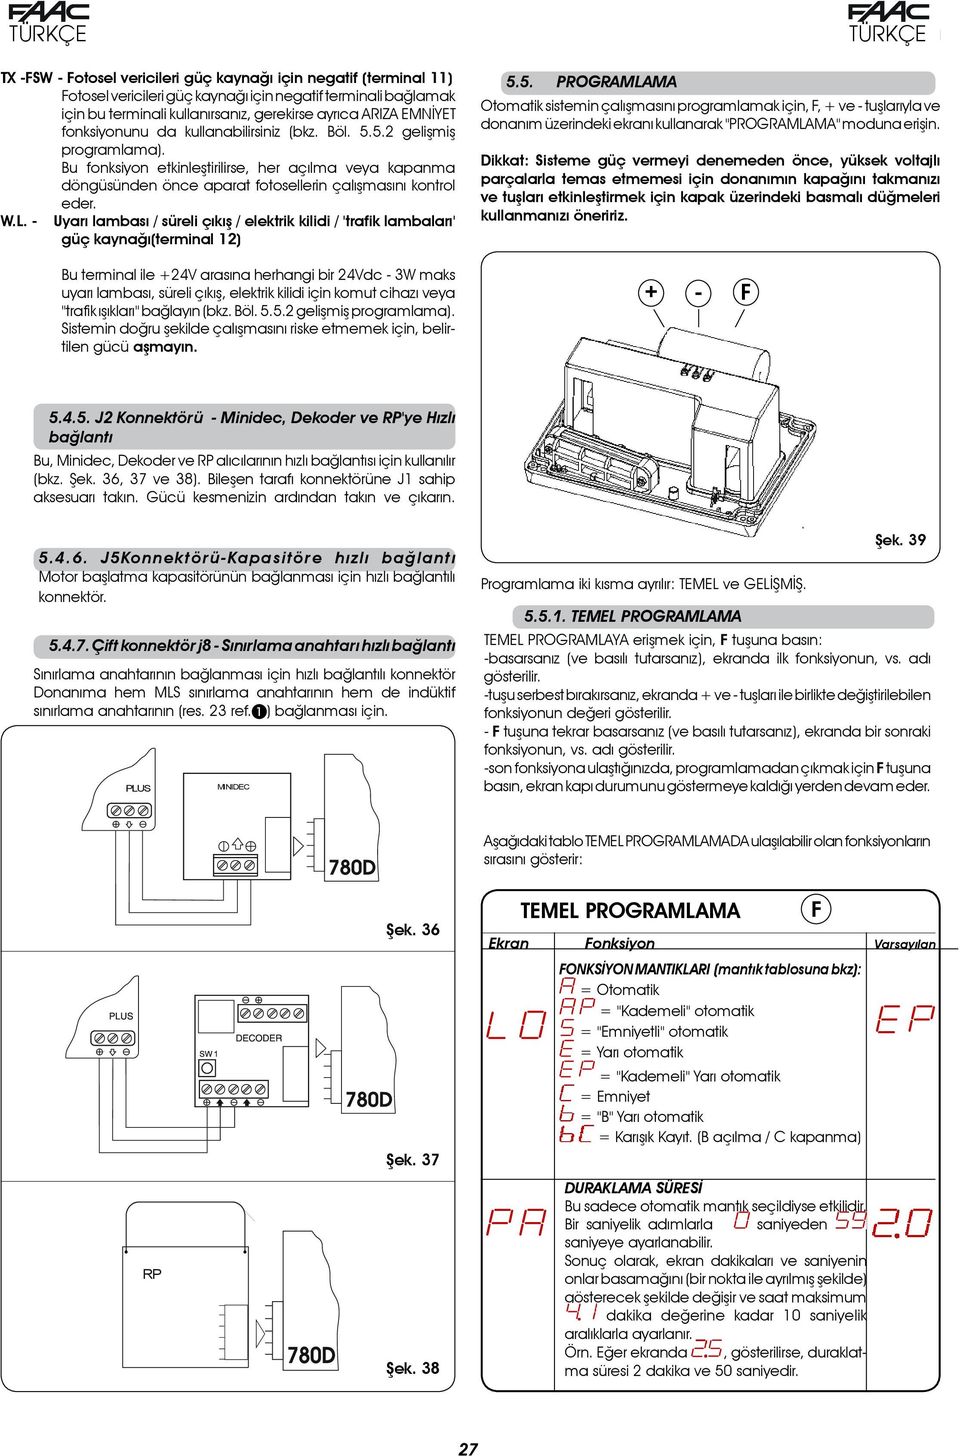 - Uyarı lambası / süreli çıkış / elektrik kilidi / 'trafik lambaları' güç kaynağı(terminal 12) 5.